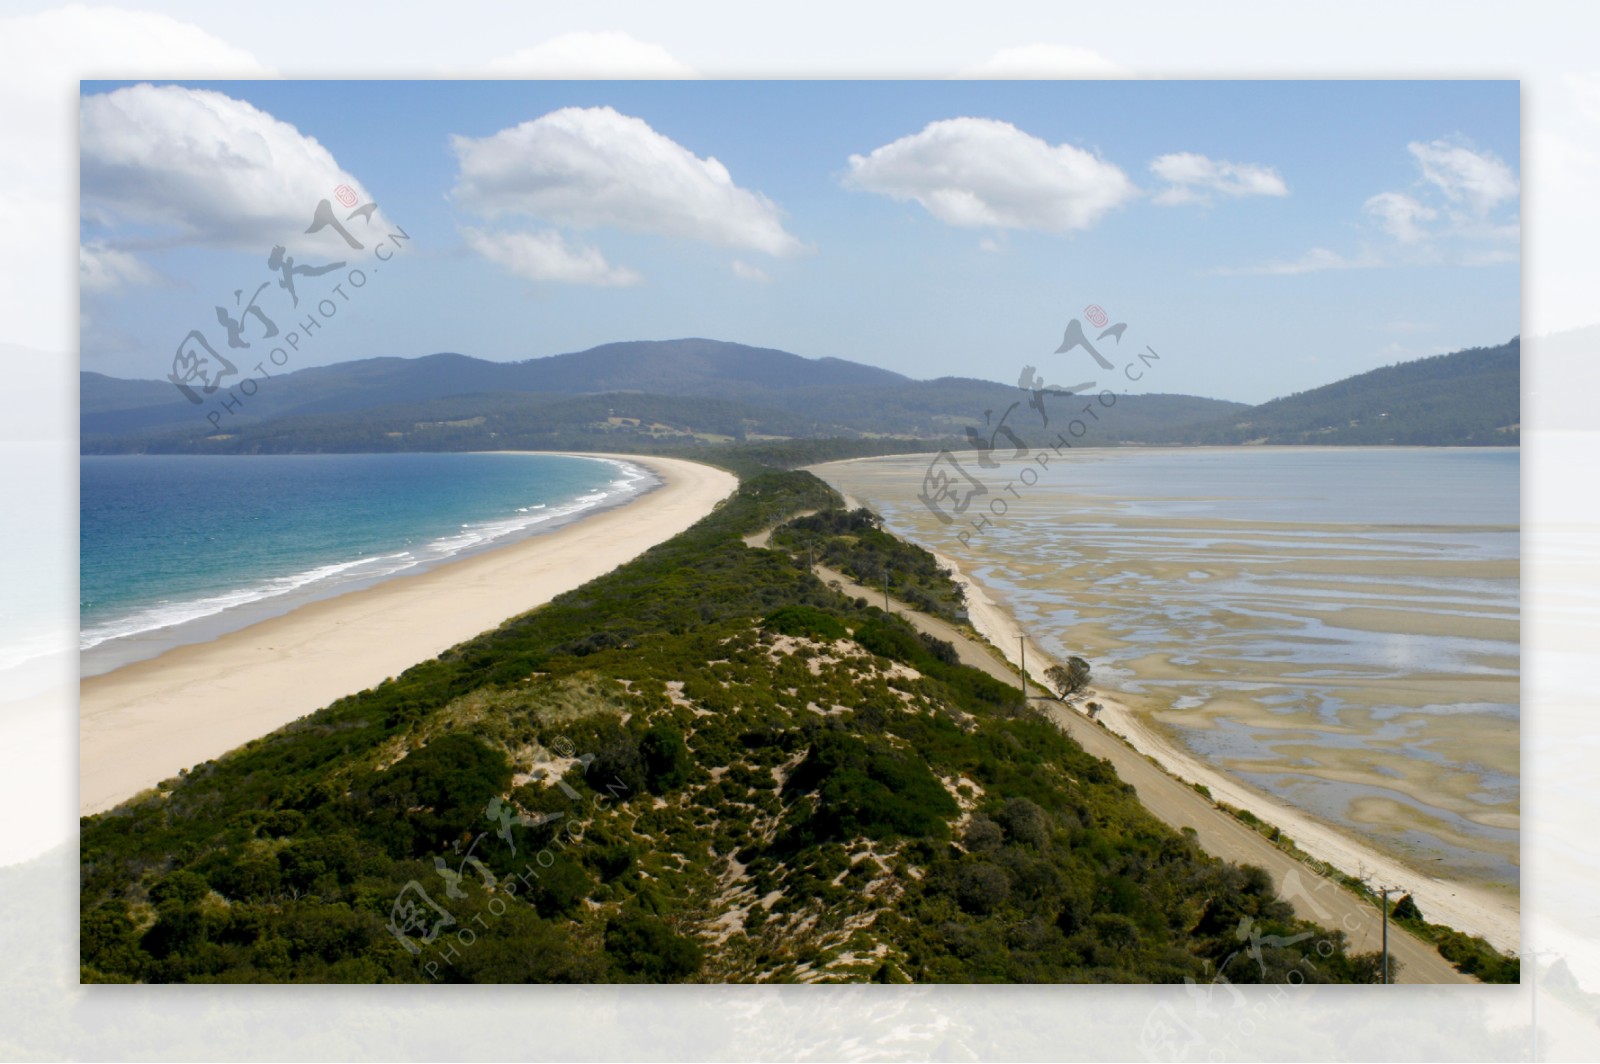 澳大利亚海景图片